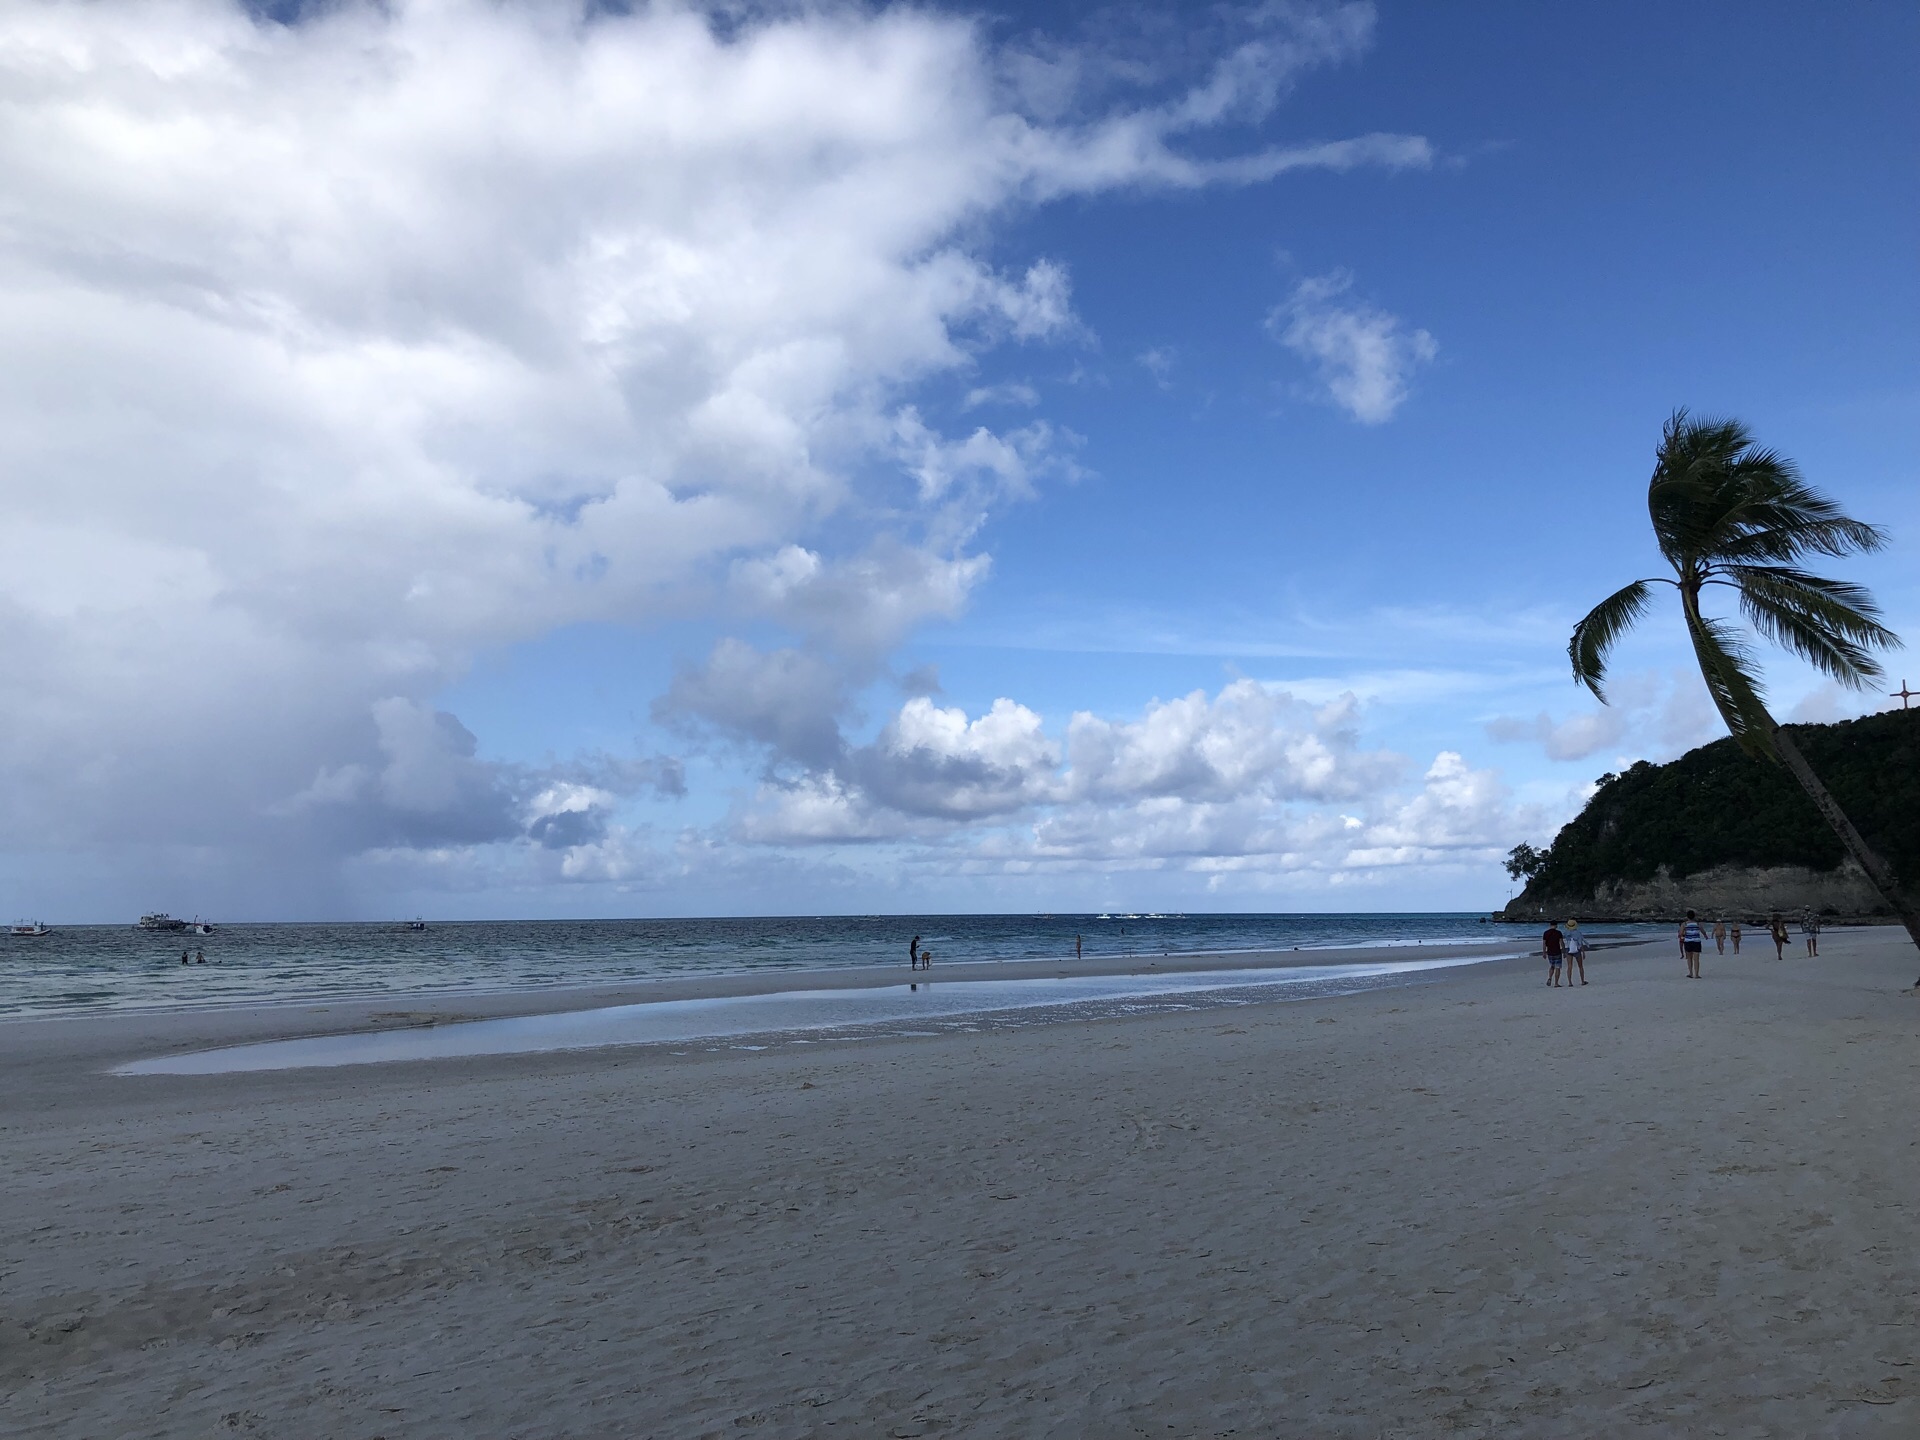 【携程攻略】长滩岛白沙滩景点,长滩岛的白沙滩非常著名。长滩岛被被评为N多个之一、第一，白沙滩功…